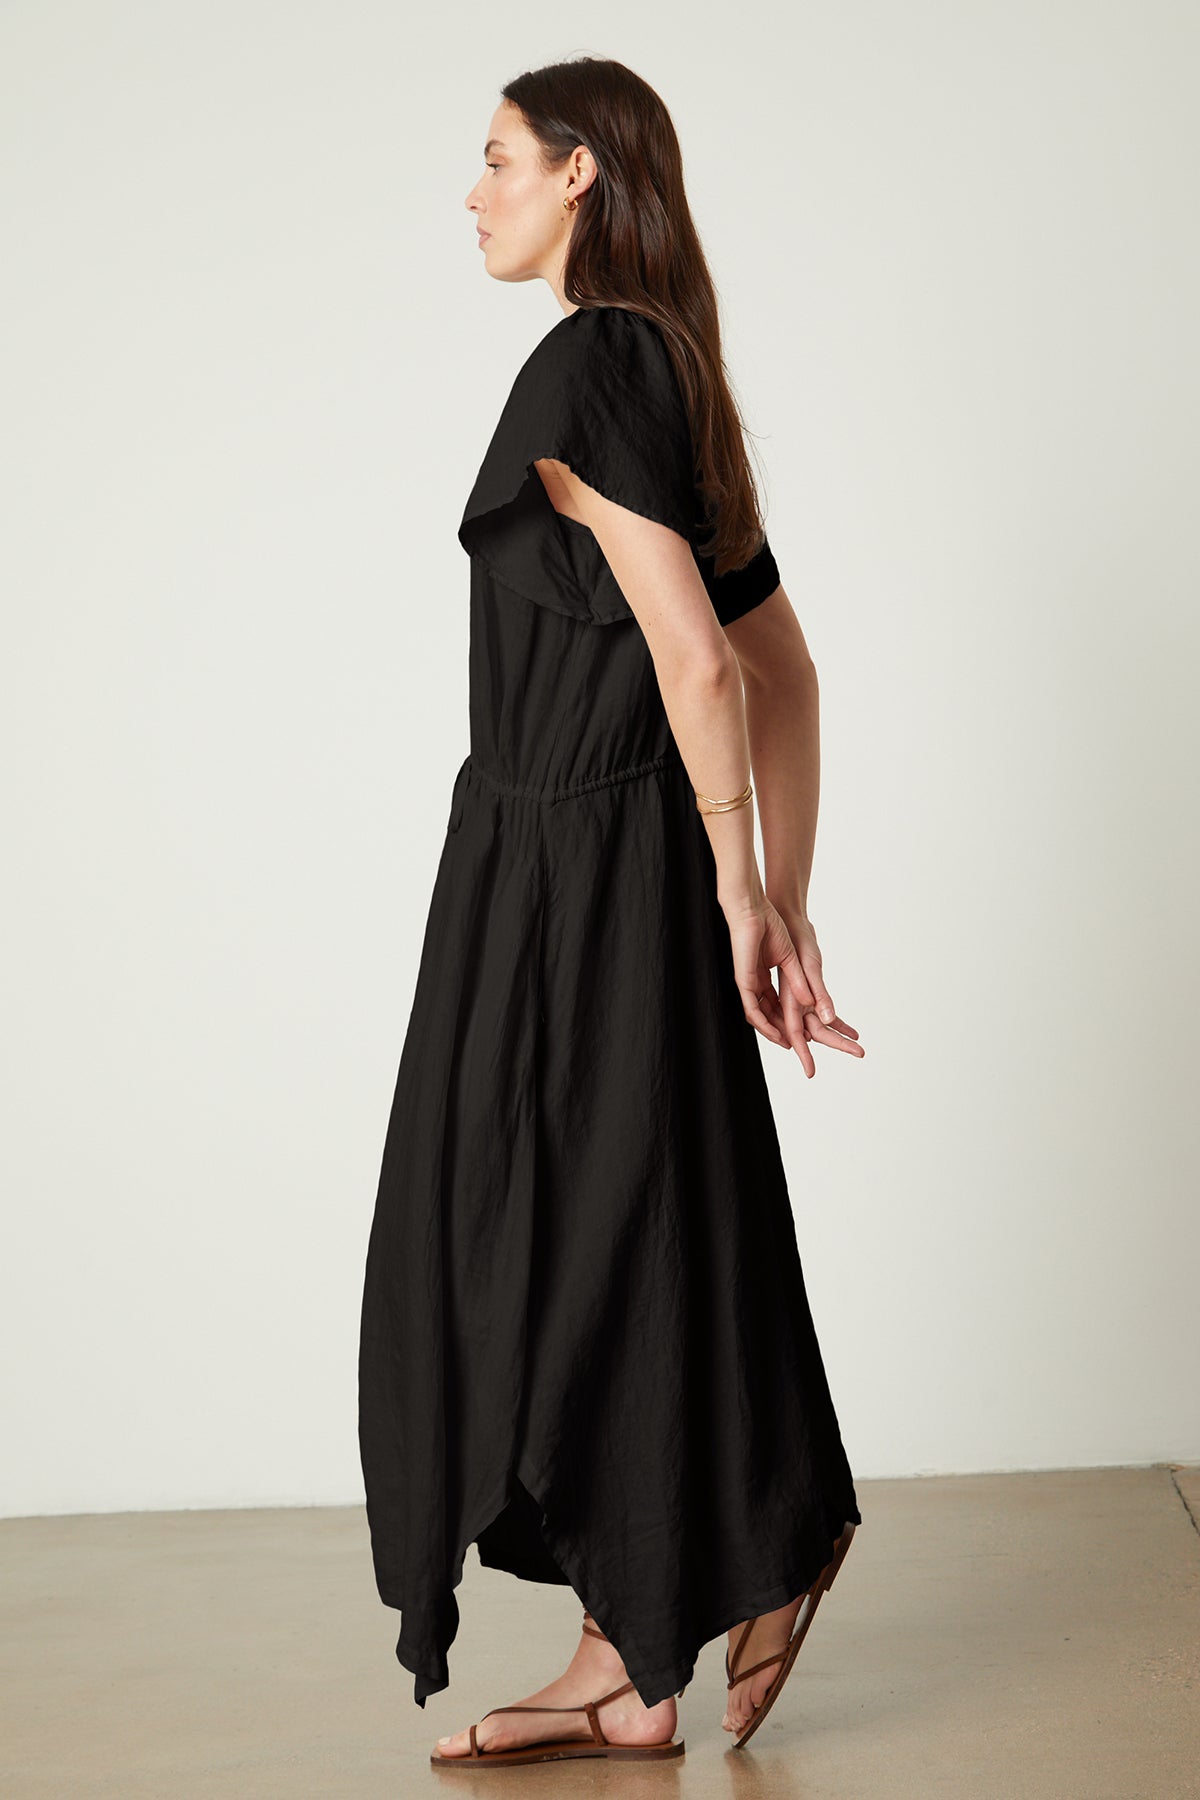 Debbie Linen Dress in black full length side-26143134613697